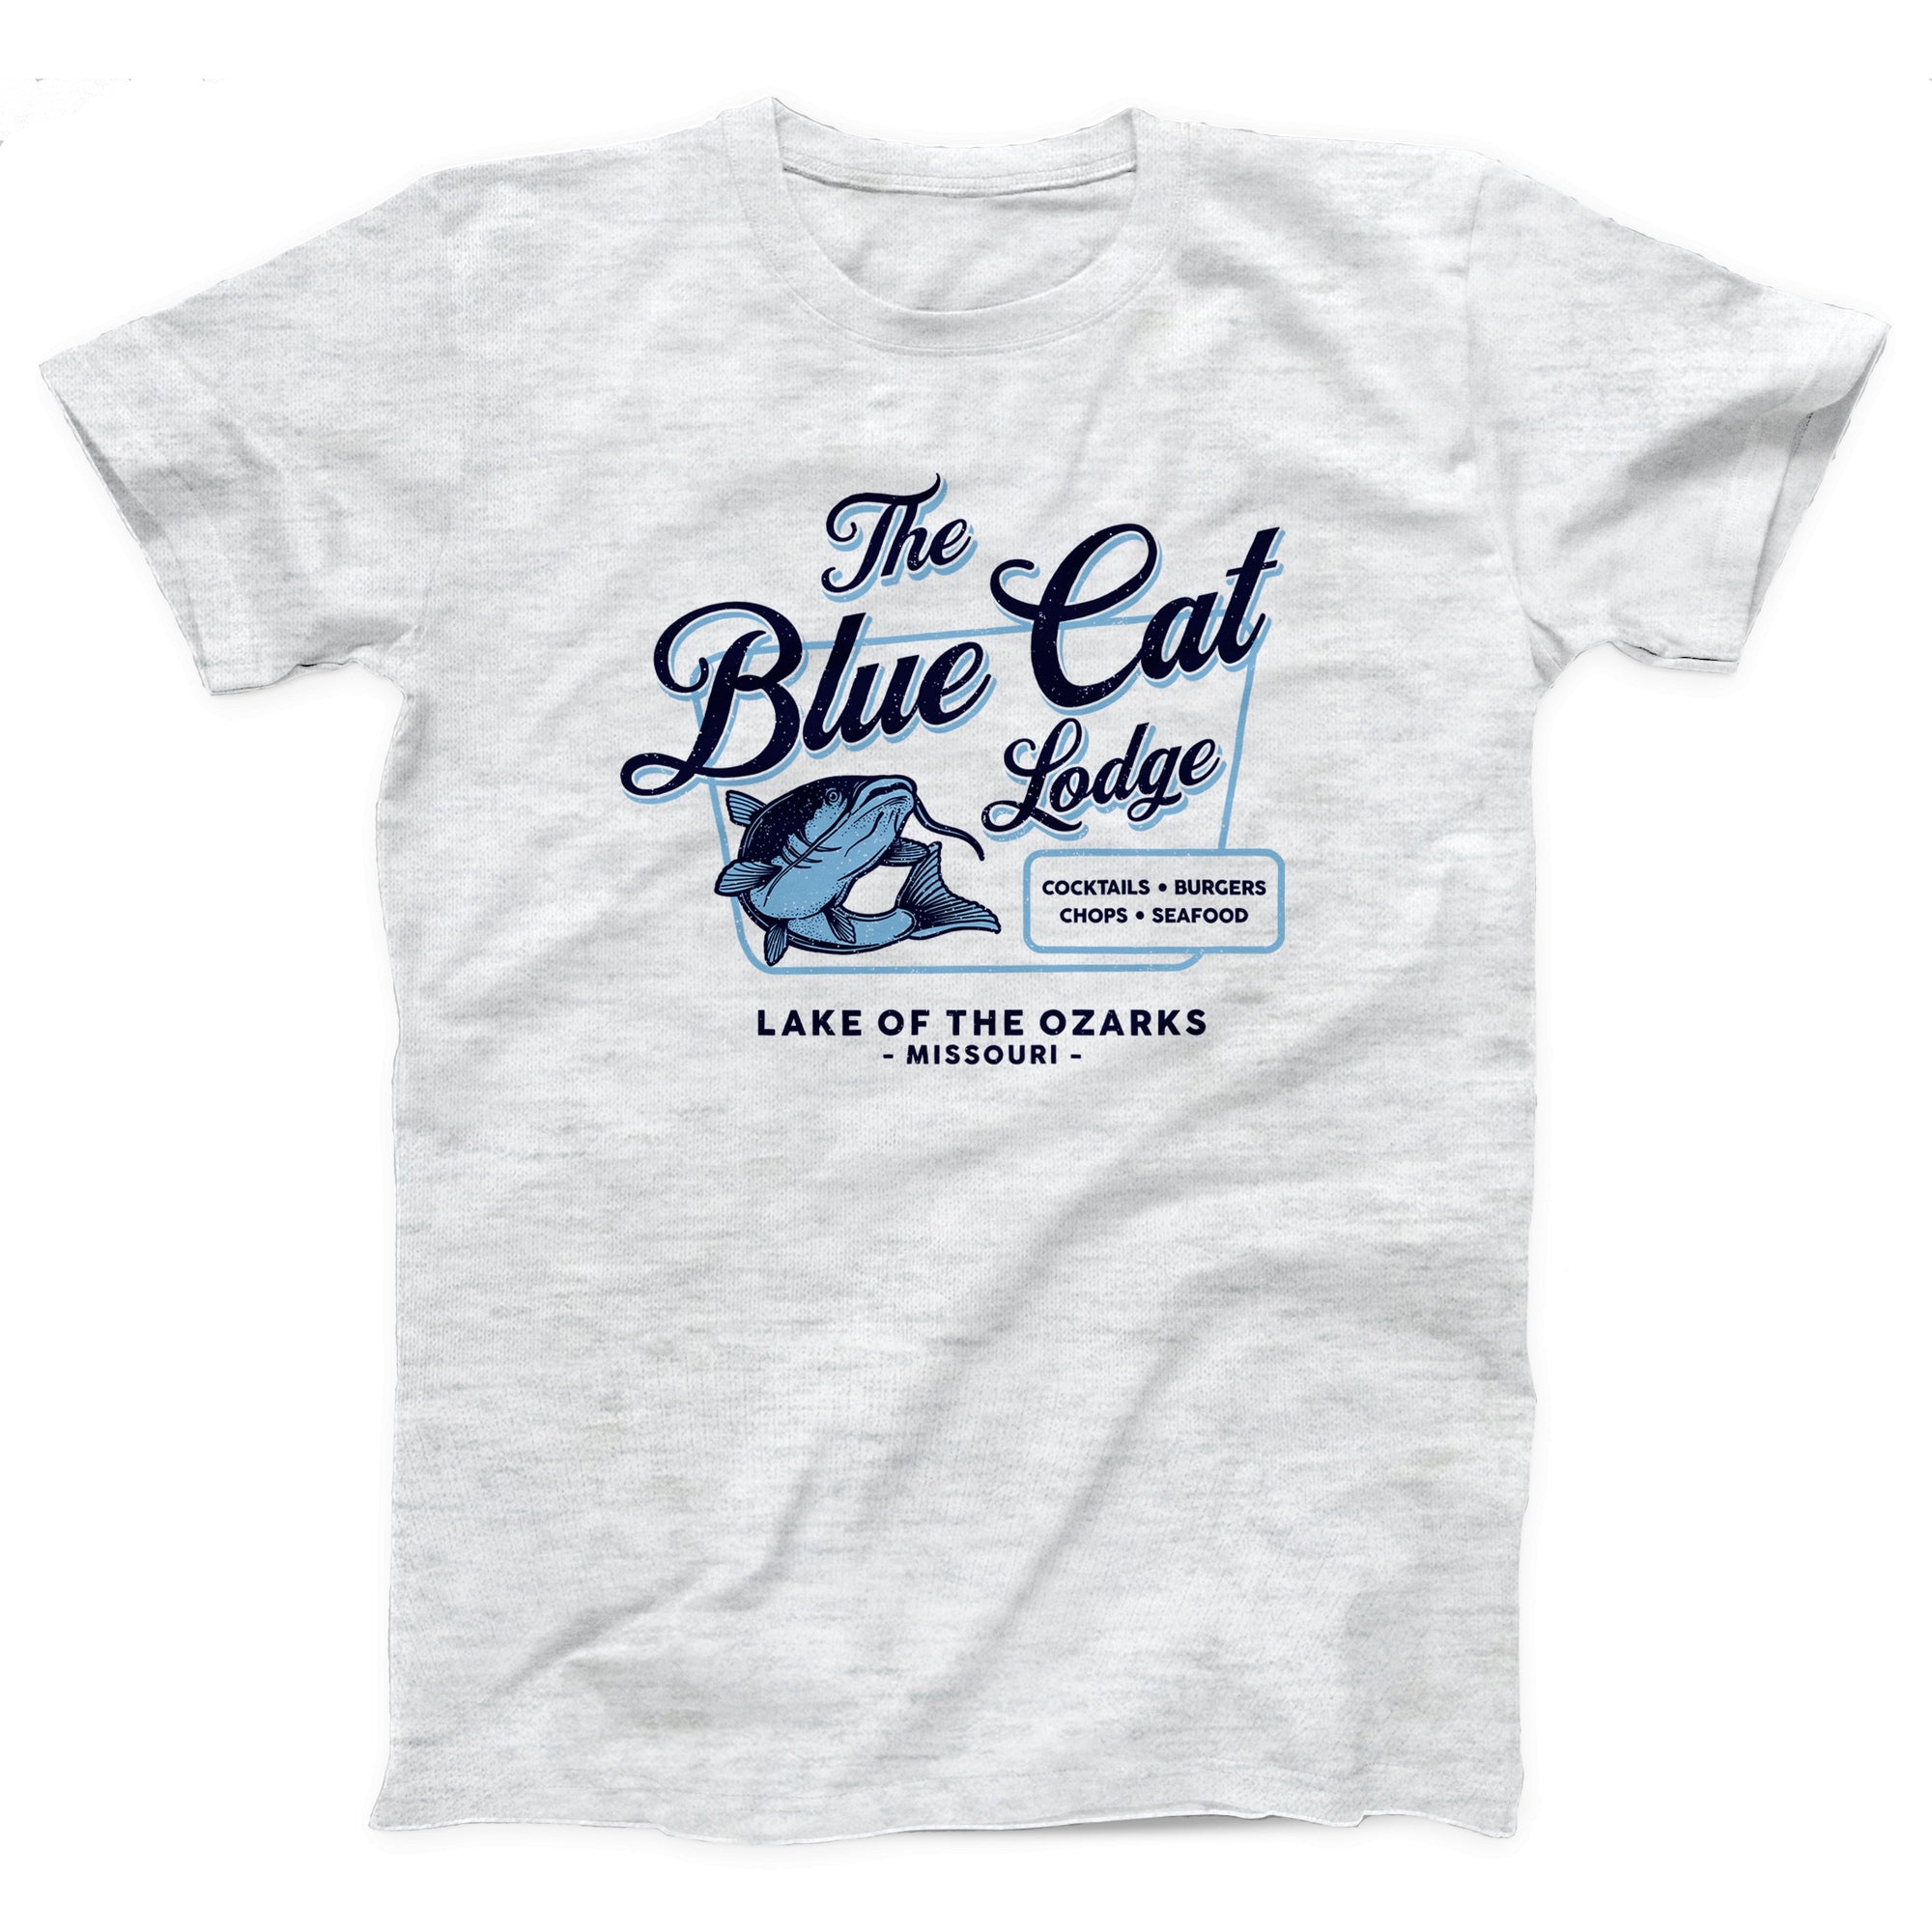 Blue Cat Lodge